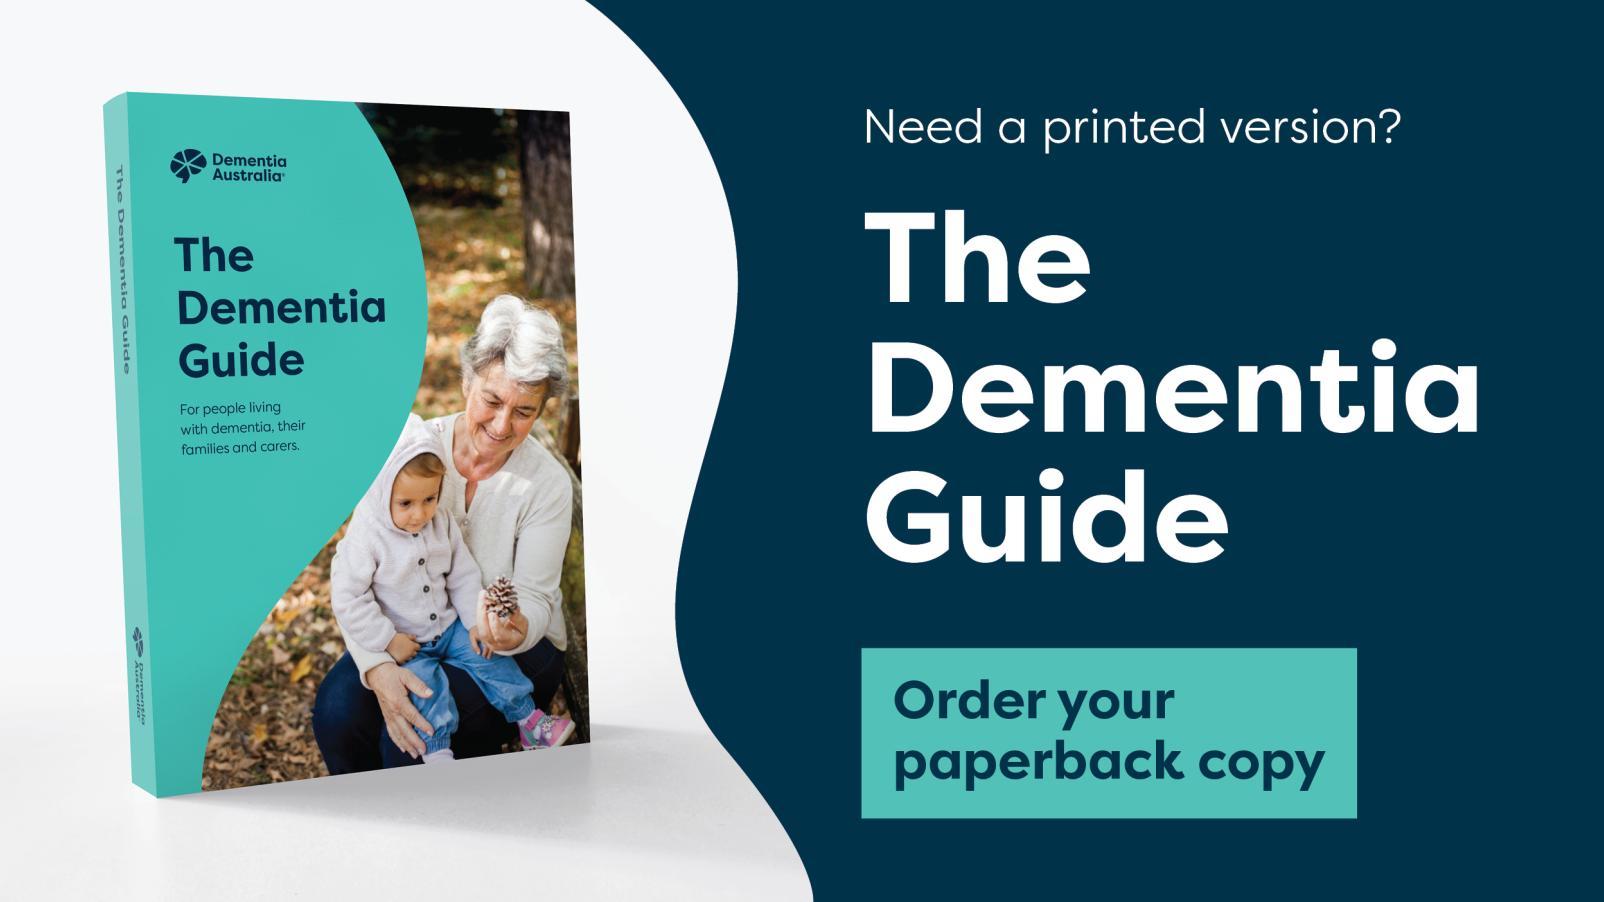 The Dementia Guide book cover, order a print copy.